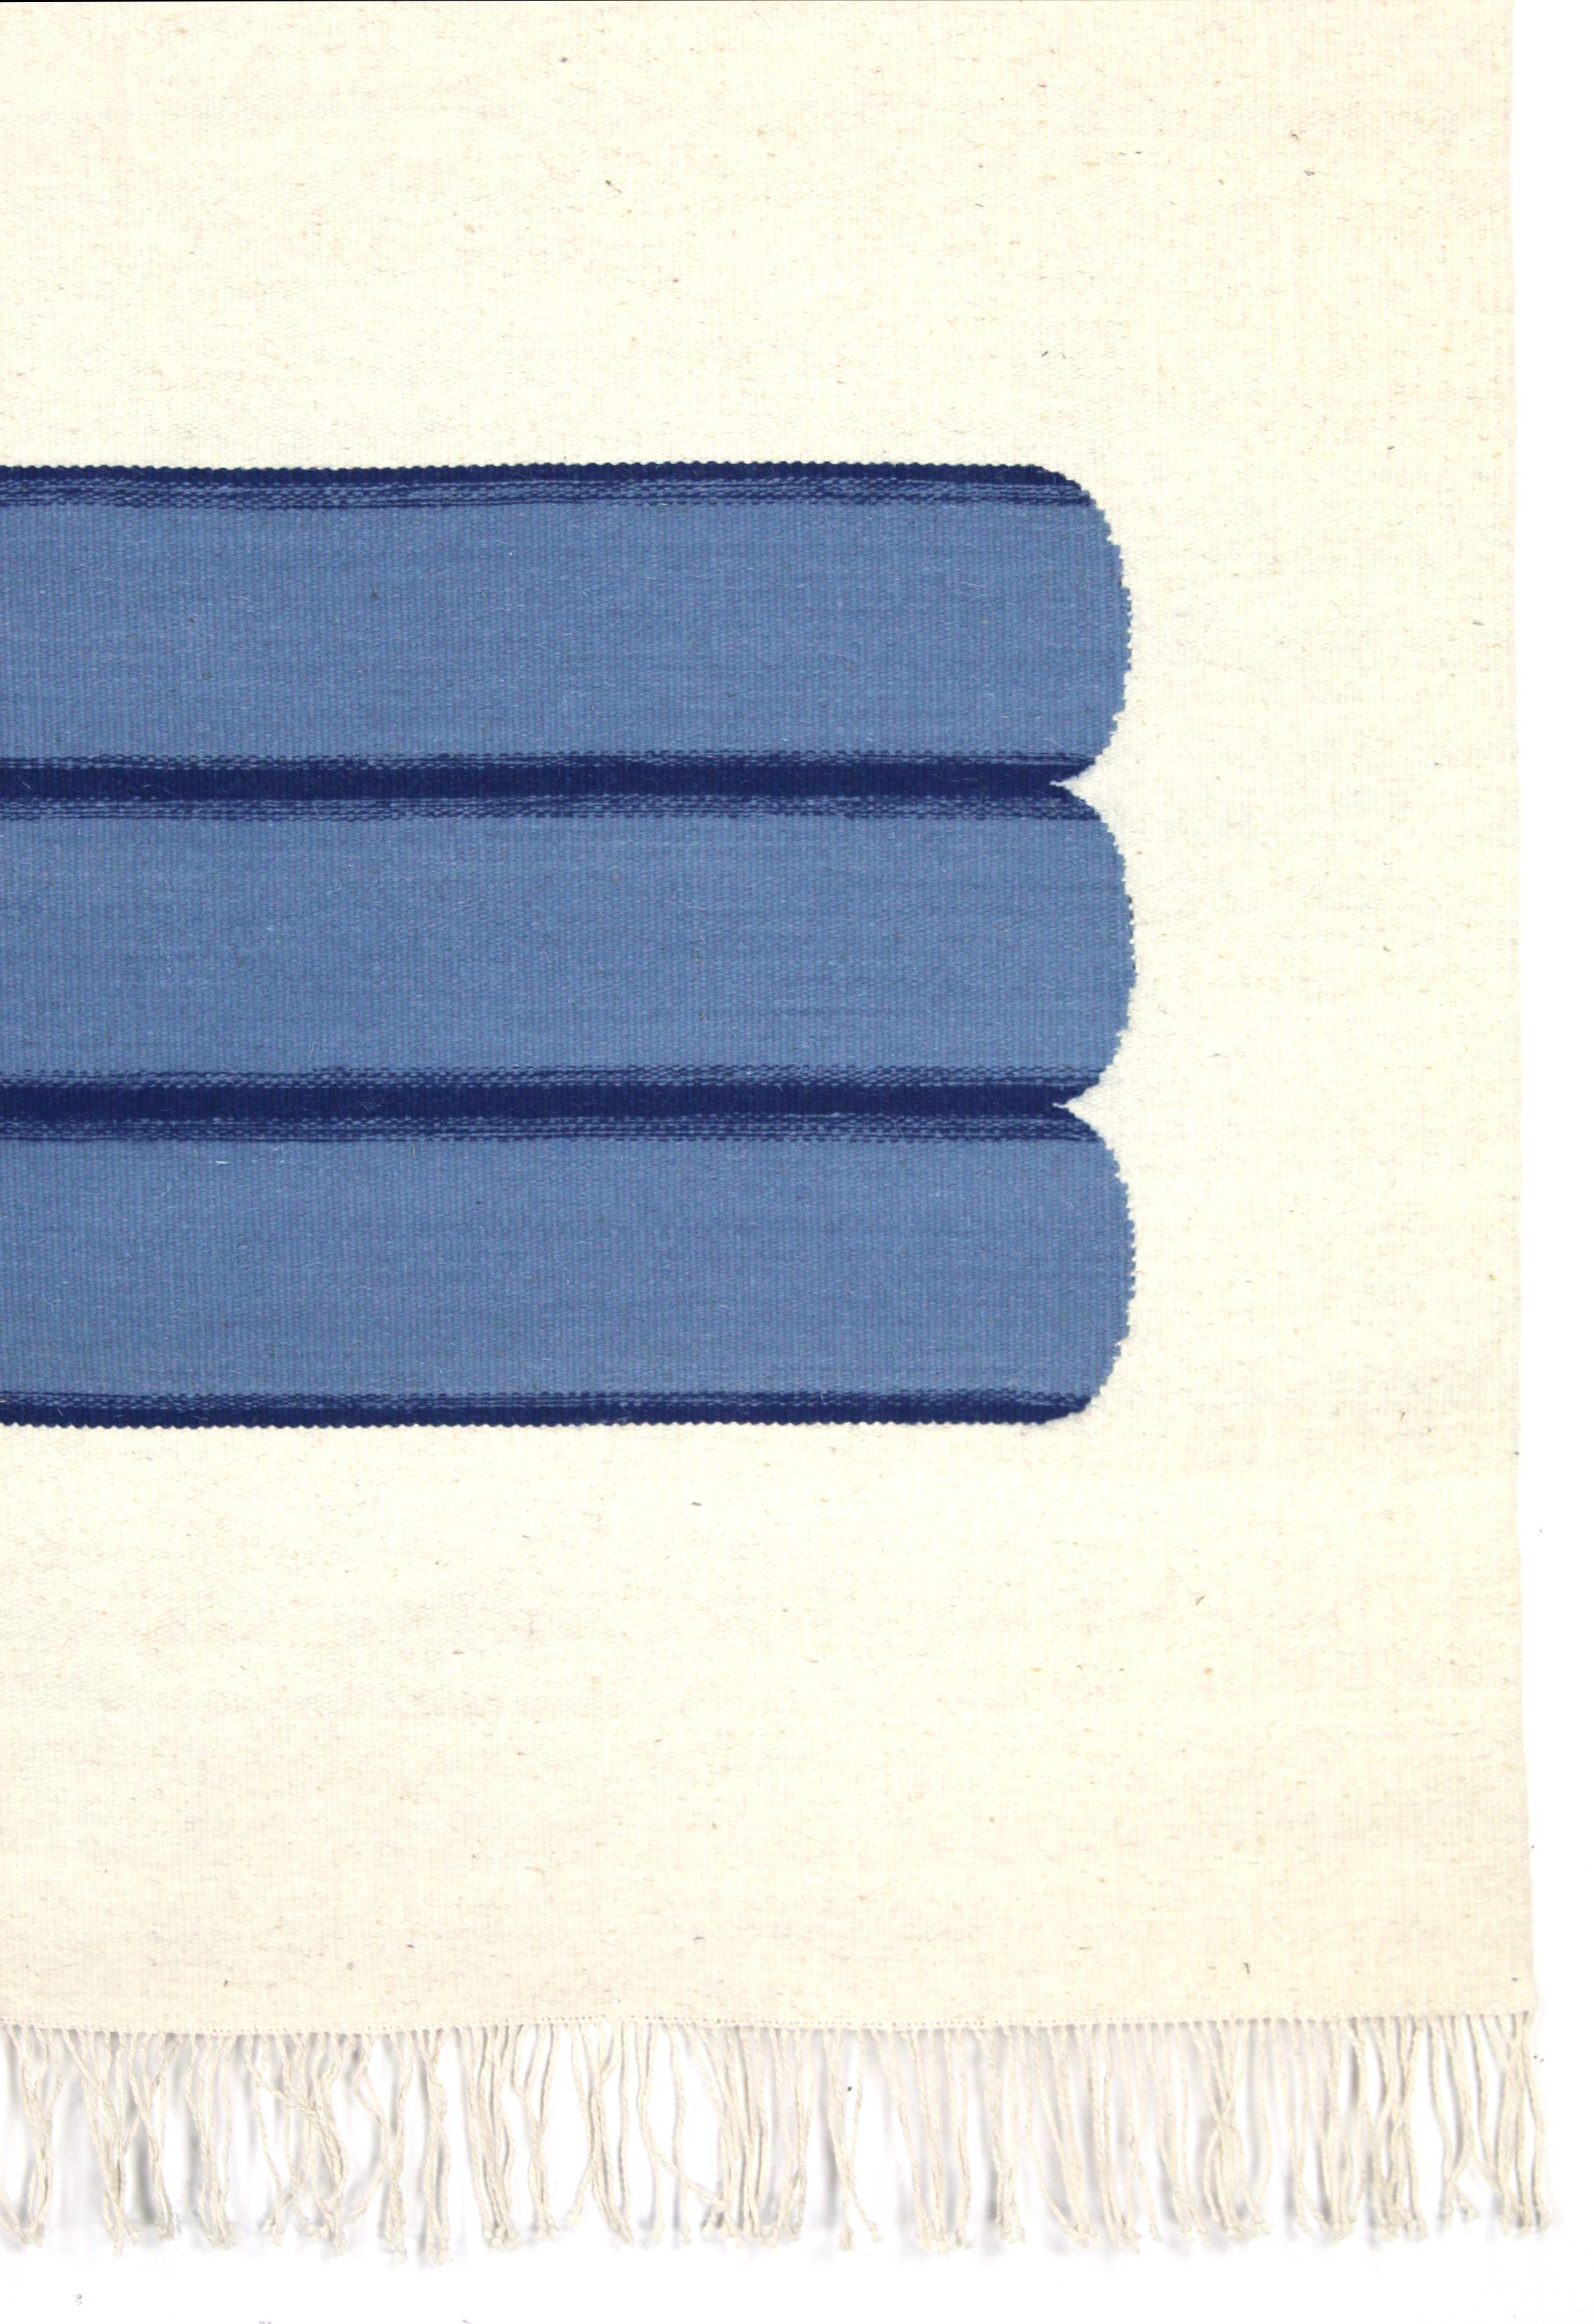 Dieser Teppich ist ein einzigartiges Erbstück. Inspiriert vom Brutalismus, dem skandinavischen Minimalismus und der Abstraktion aus der Mitte des Jahrhunderts. 

Andrew Boos versucht neu zu definieren, was ein Teppich ist. Seine Arbeiten sind